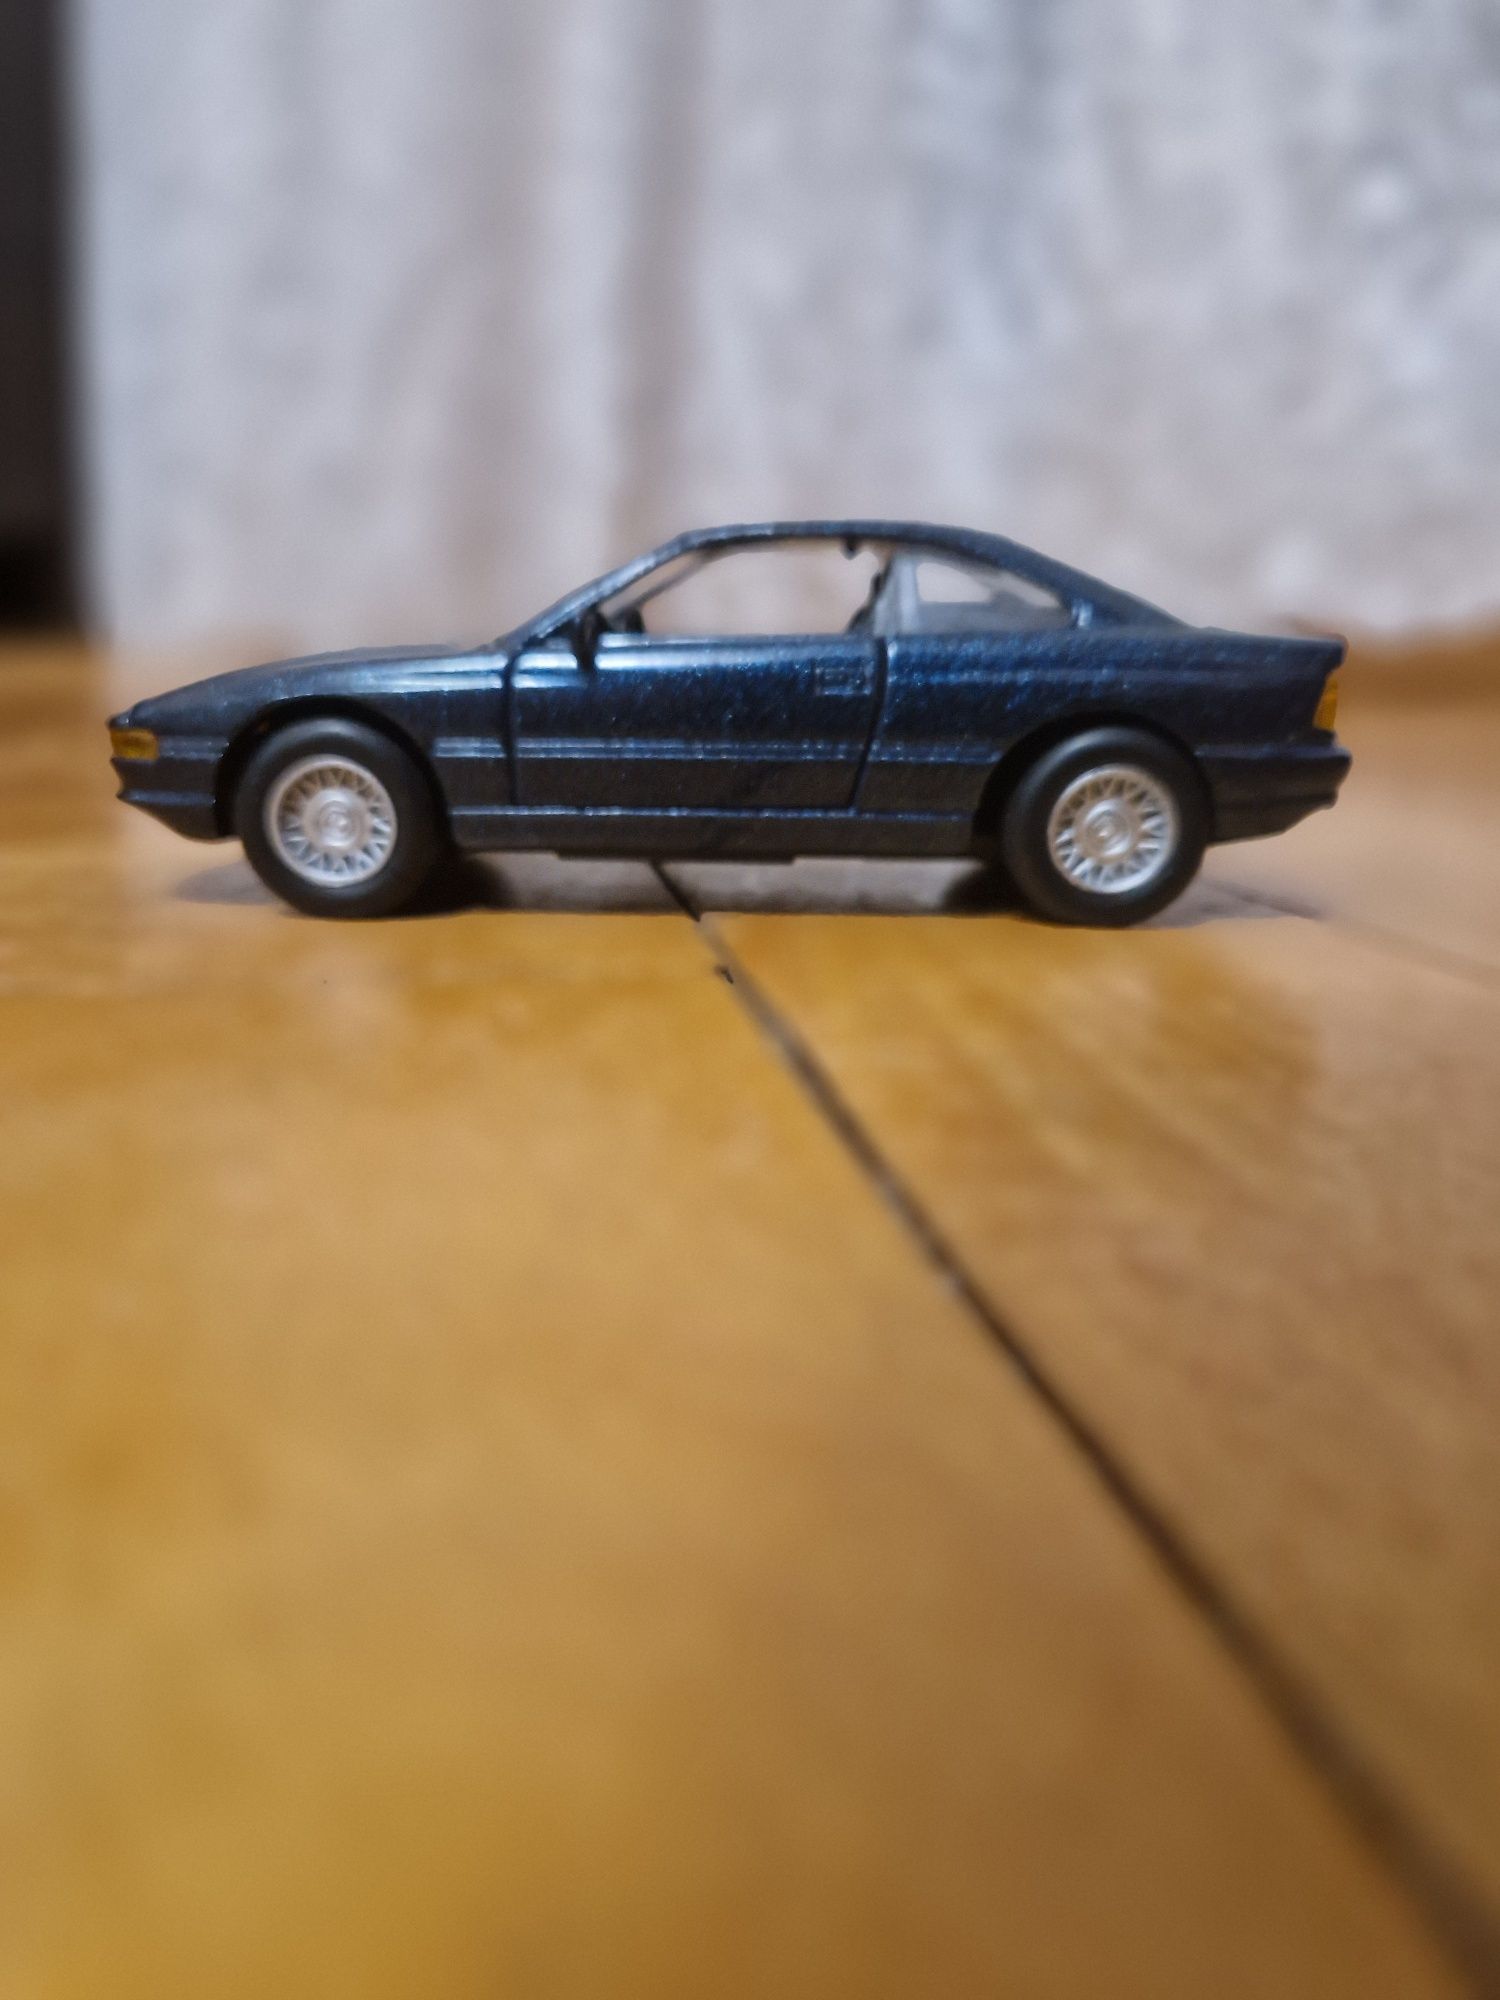 BMW 850i 1:43 Welly